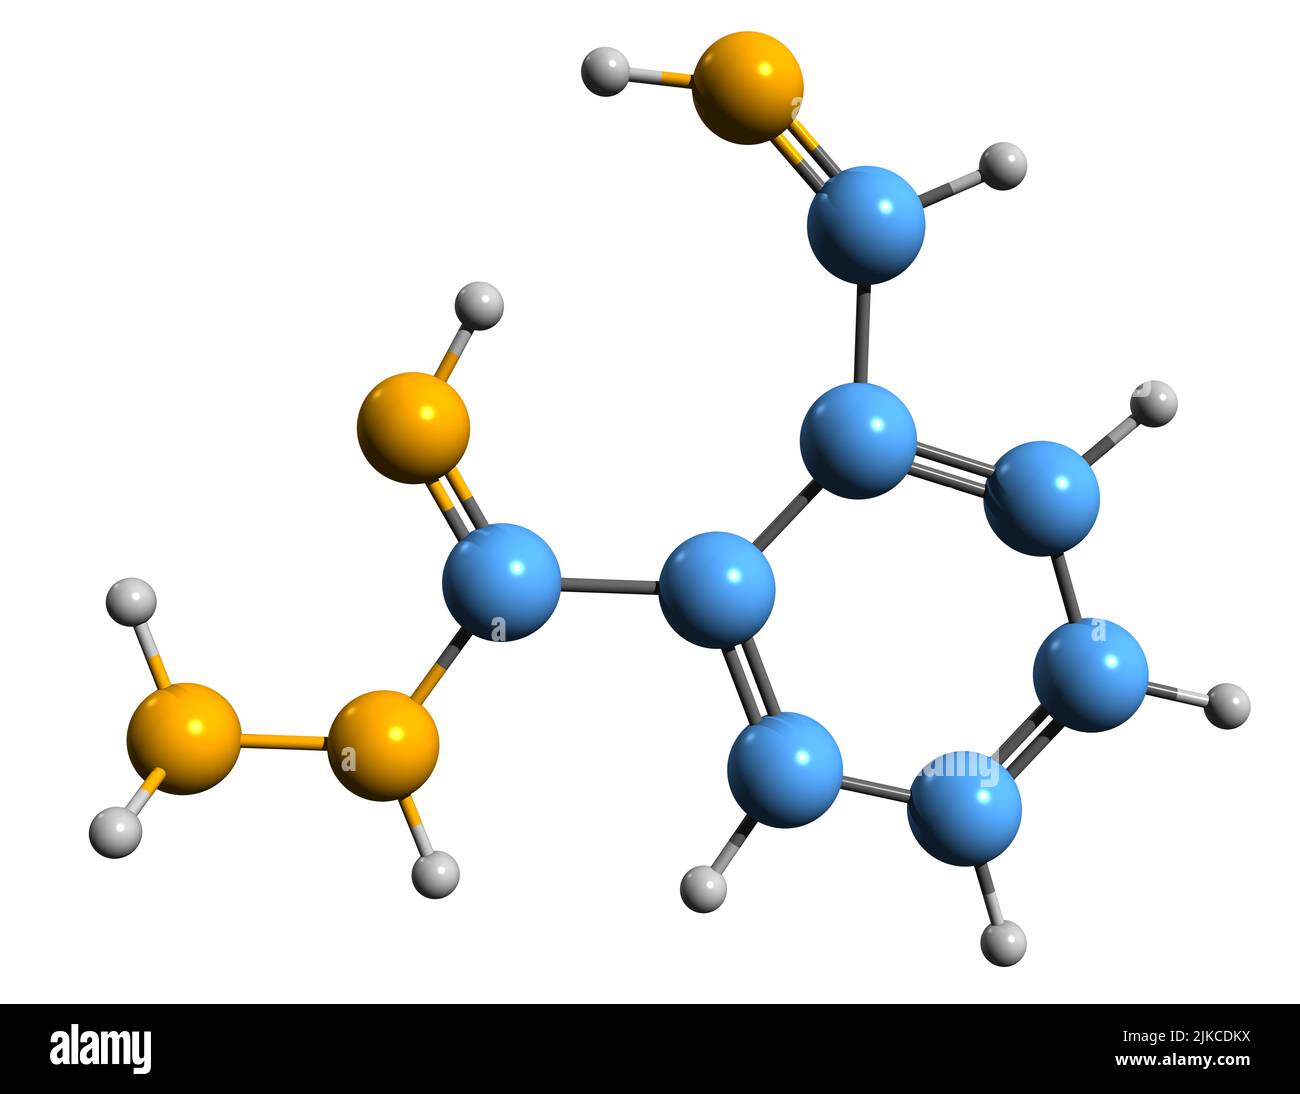 3D Bild der Skelettformel von Hydralazin - molekulare chemische Struktur von Hypertension-Medikamenten auf weißem Hintergrund isoliert Stockfoto